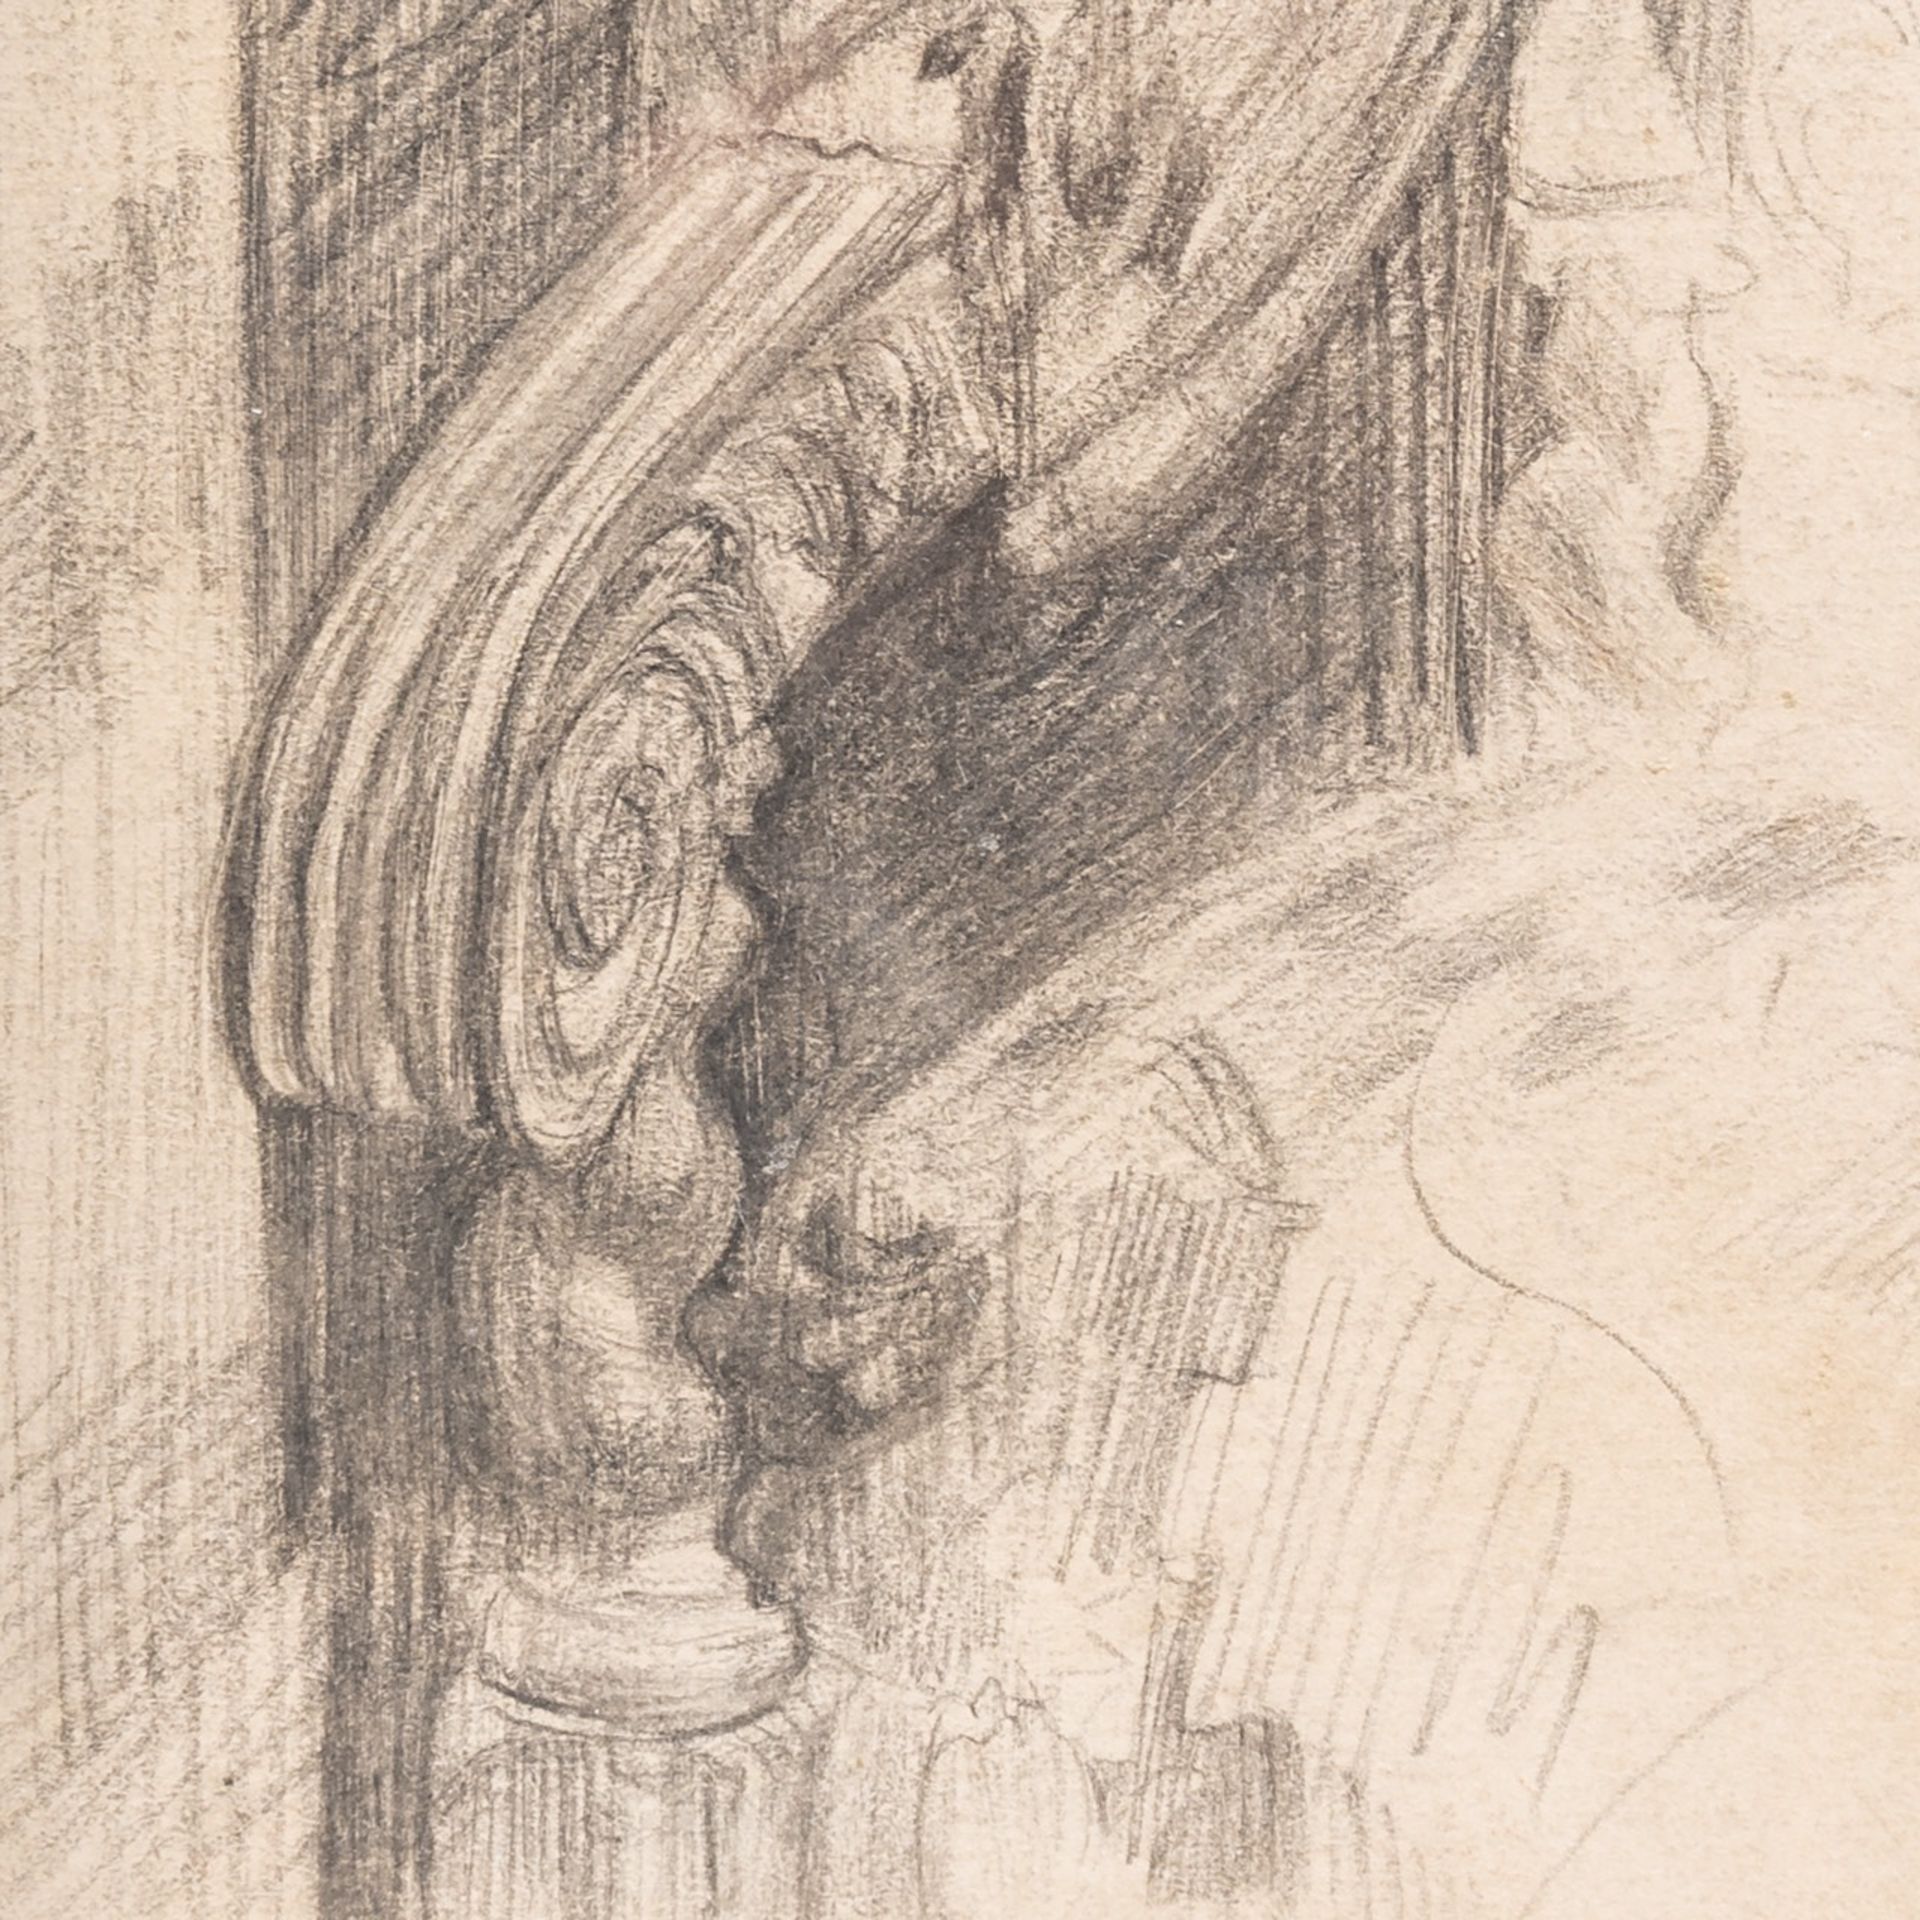 James Ensor (1860-1949), 'Un bras du fauteuil du bureau', 1889, pencil drawing 22 x 17 cm. (8.6 x 6. - Image 5 of 5